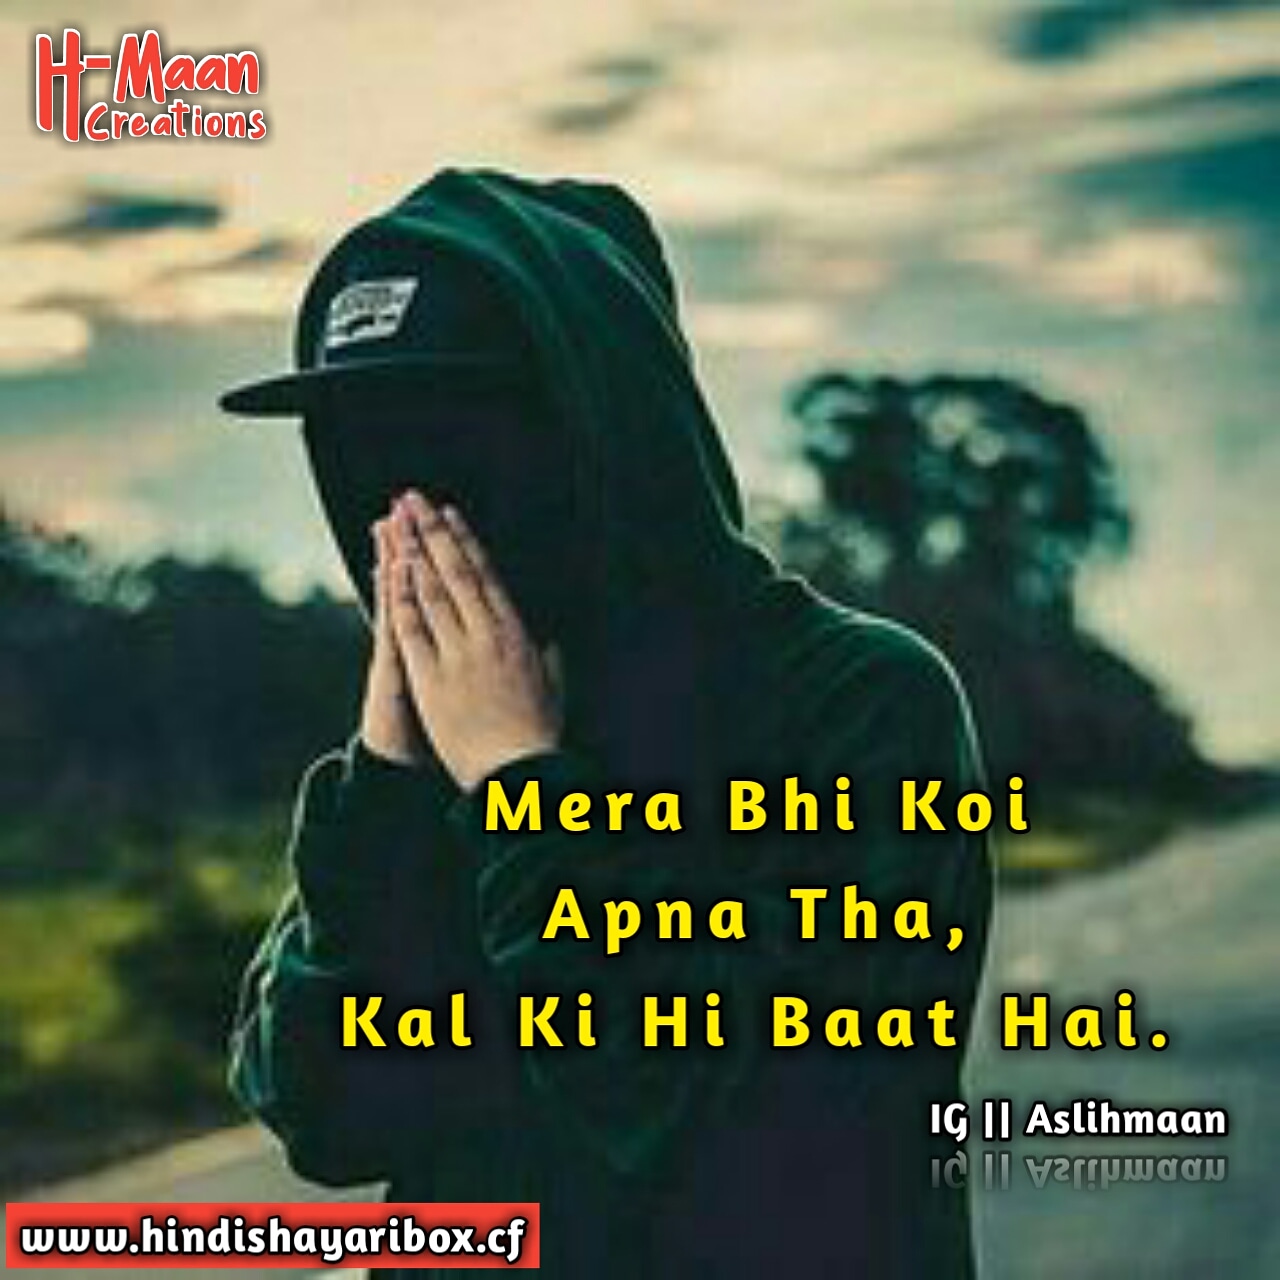 Mera Bhi Koi Apna Tha Kal Ki Hi Baat Hai | Sad Boy Shayari Images ...